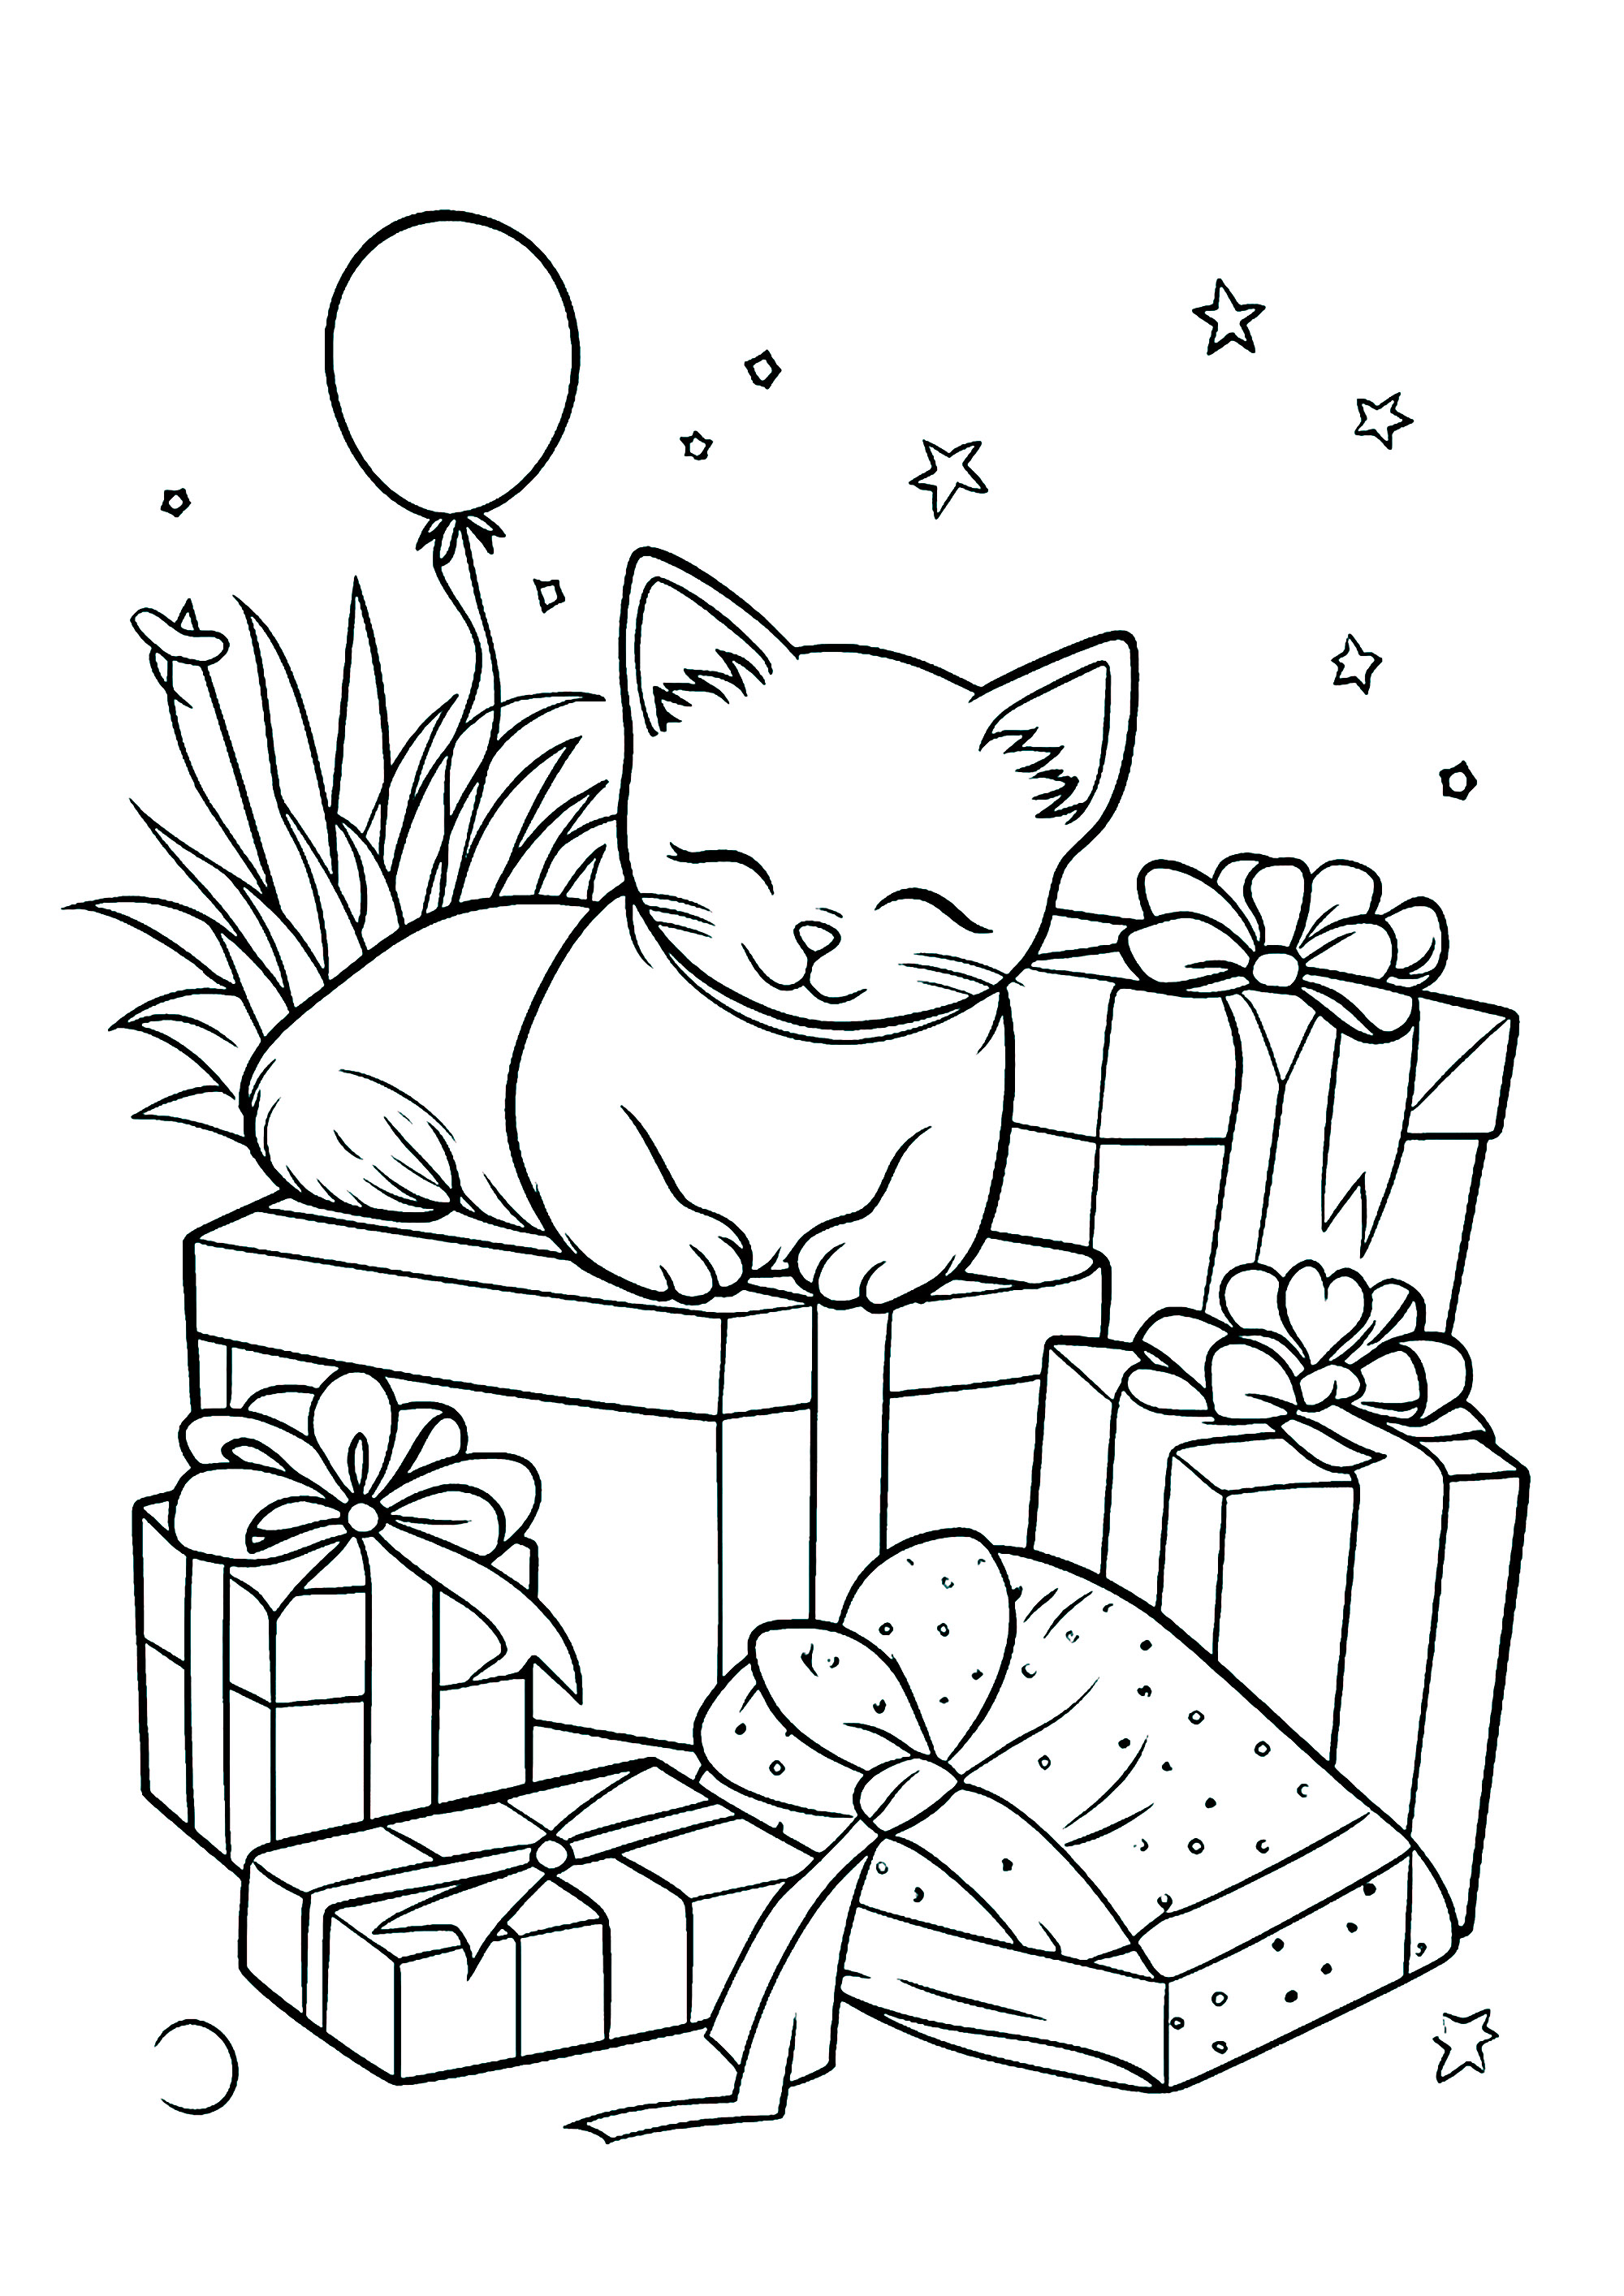 Um gato e muitos presentes embrulhados